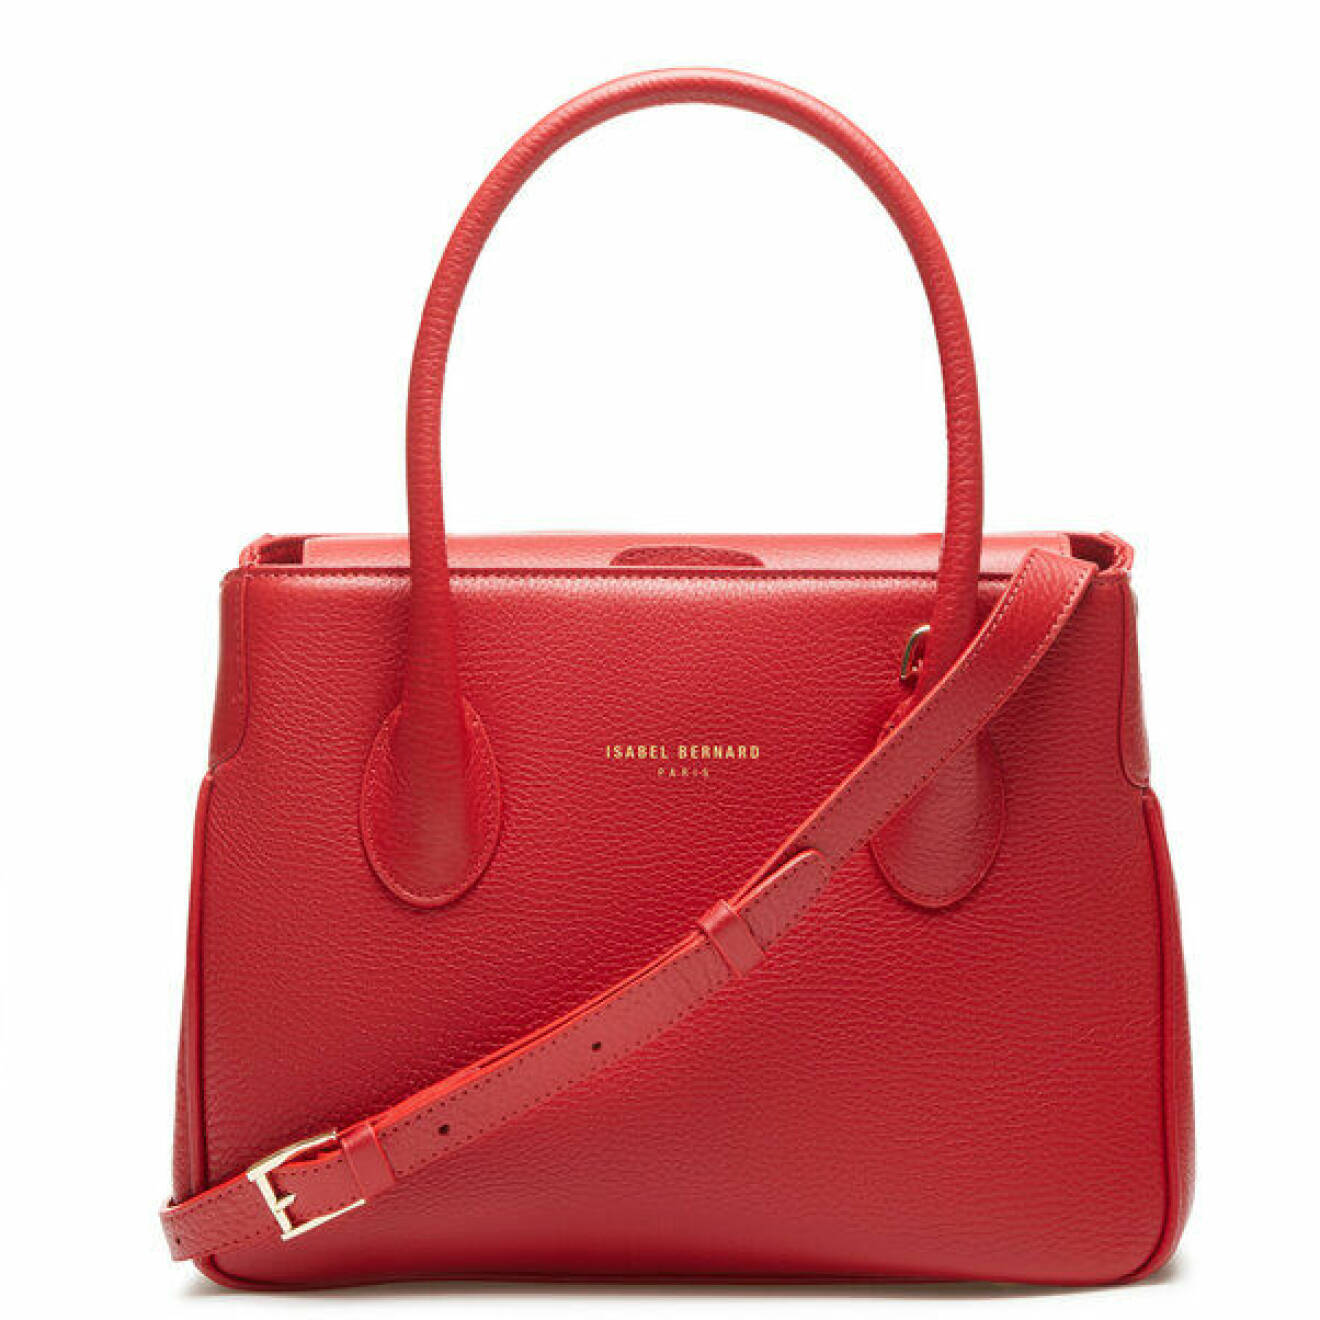 röd handväska från Isabel Bernard